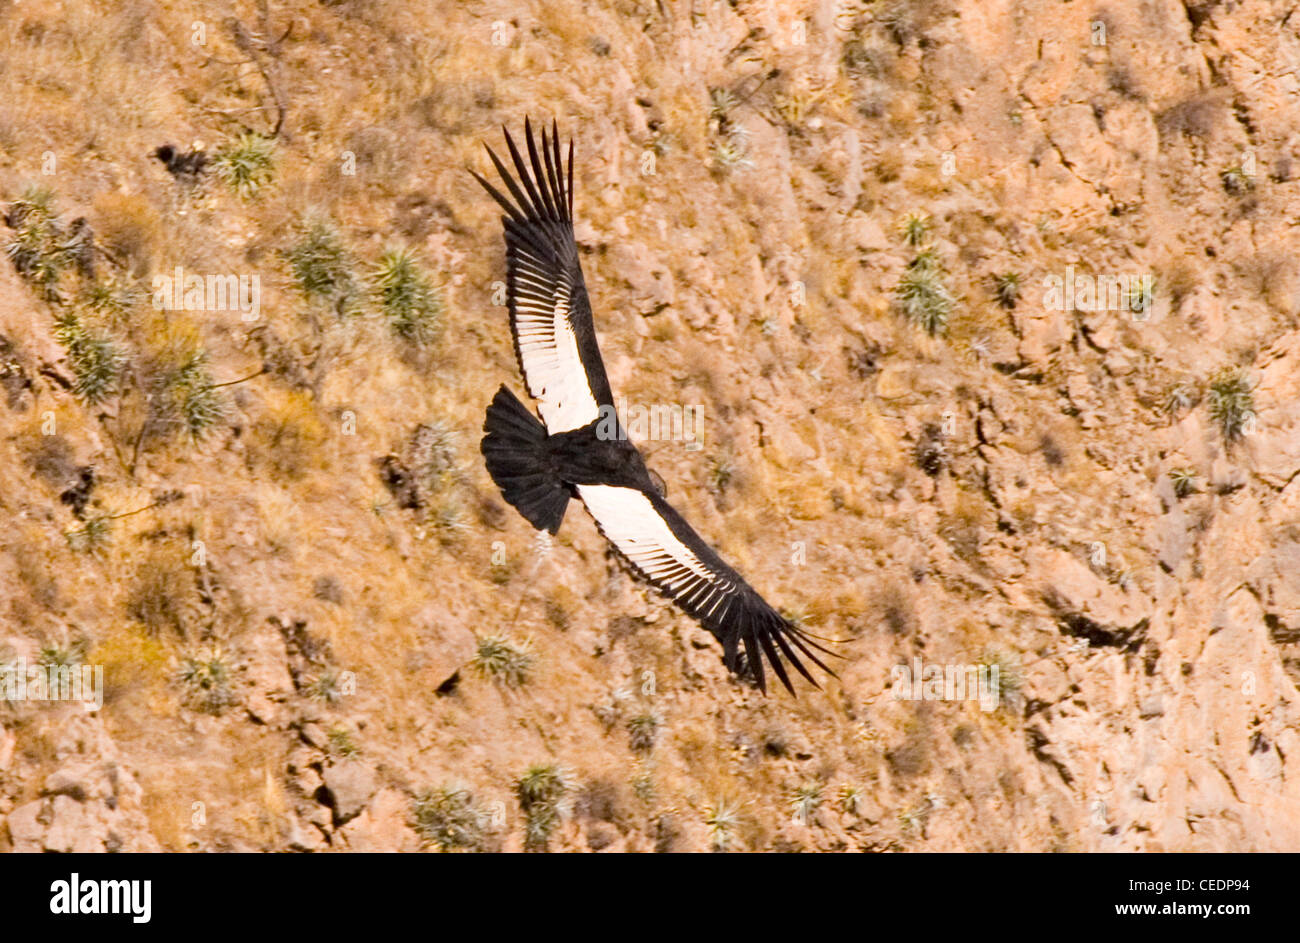 Peru, Colca Canyon, La Cruz del Condor (the condor lookout), Andean Condor (Vultur gryphus) in flight Stock Photo